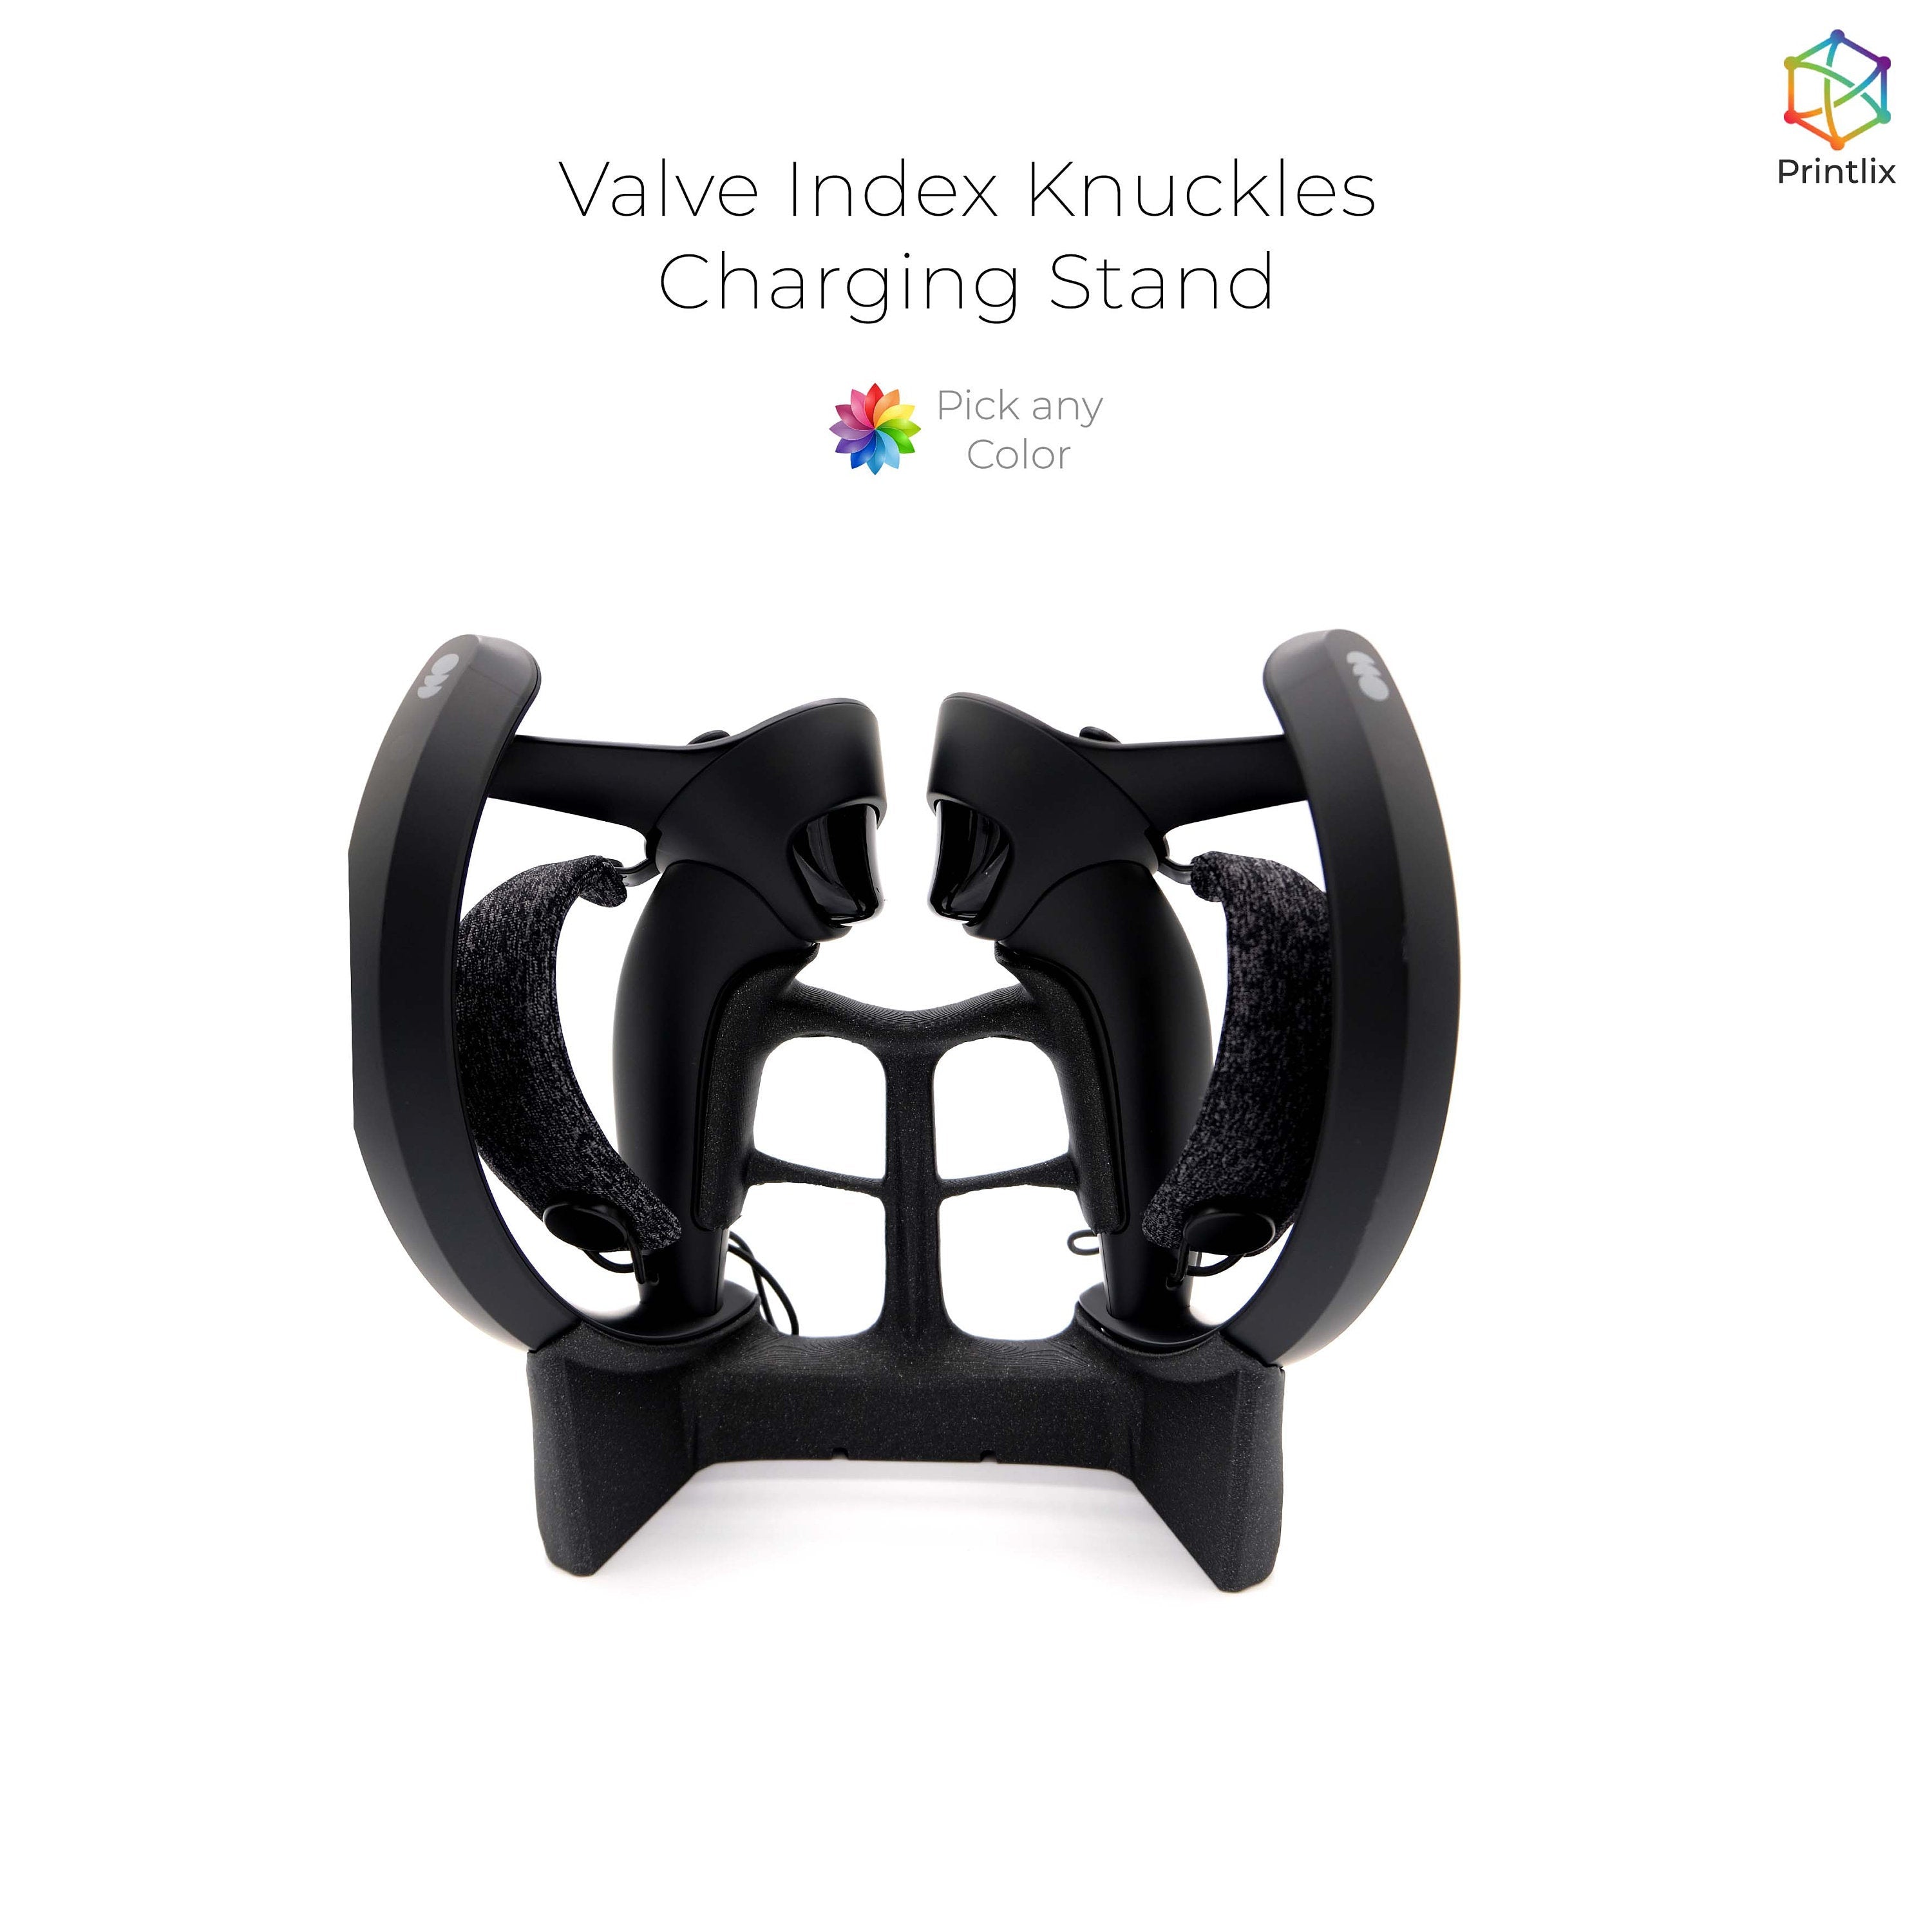 Valve Index Knuckles V1 Charging Stand